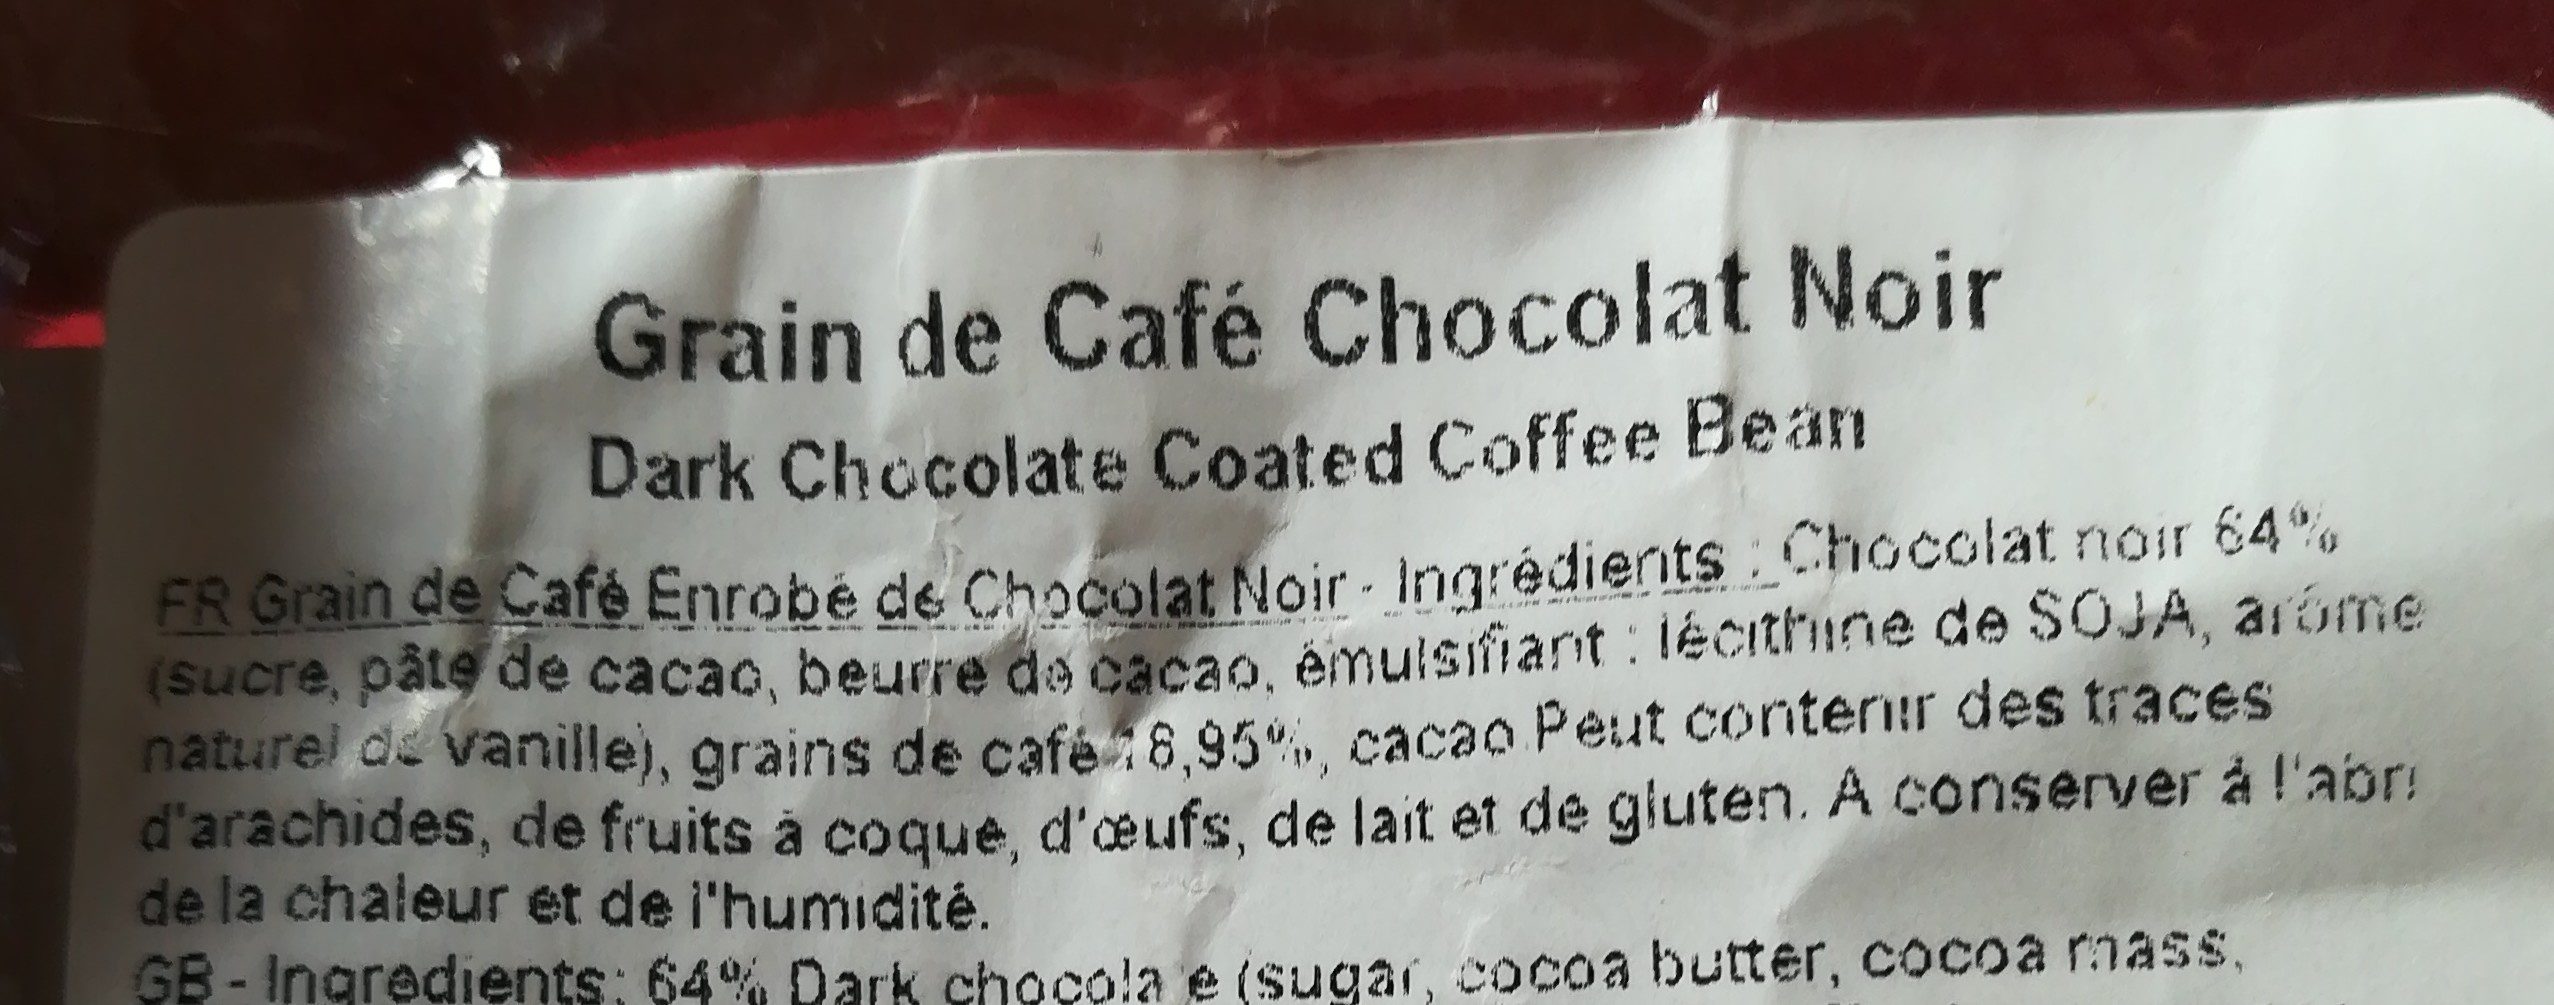 Grains de café enrobé de chocolat noir - Ingrédients